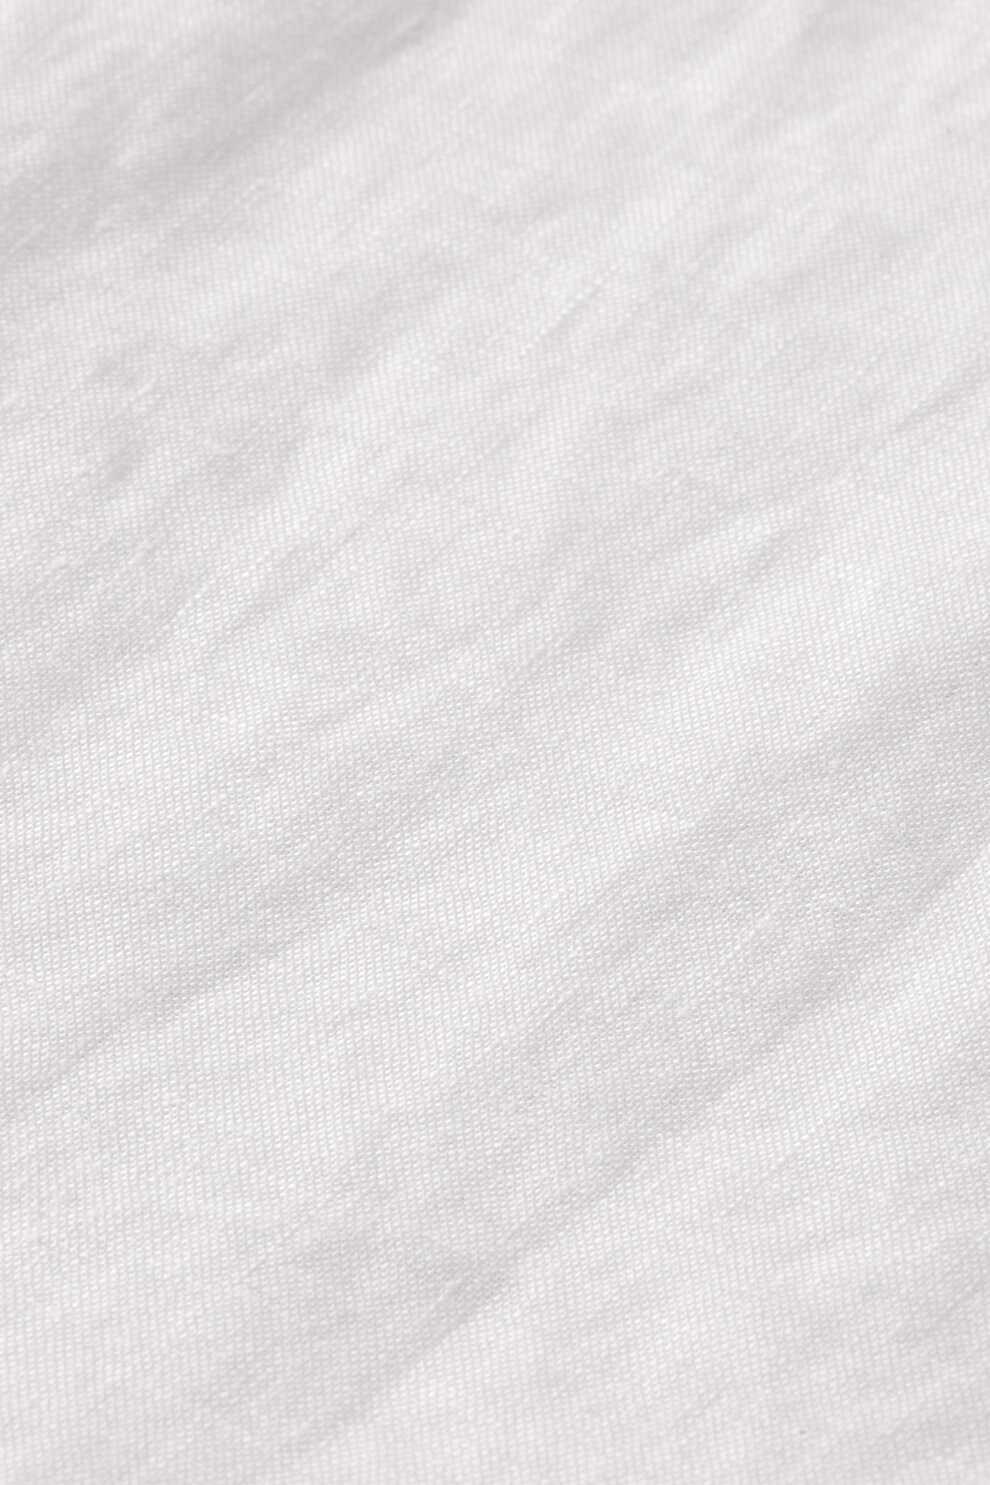 ŽENE - Košulje - Scotch & Soda košulja - Dugi rukav - Bijela